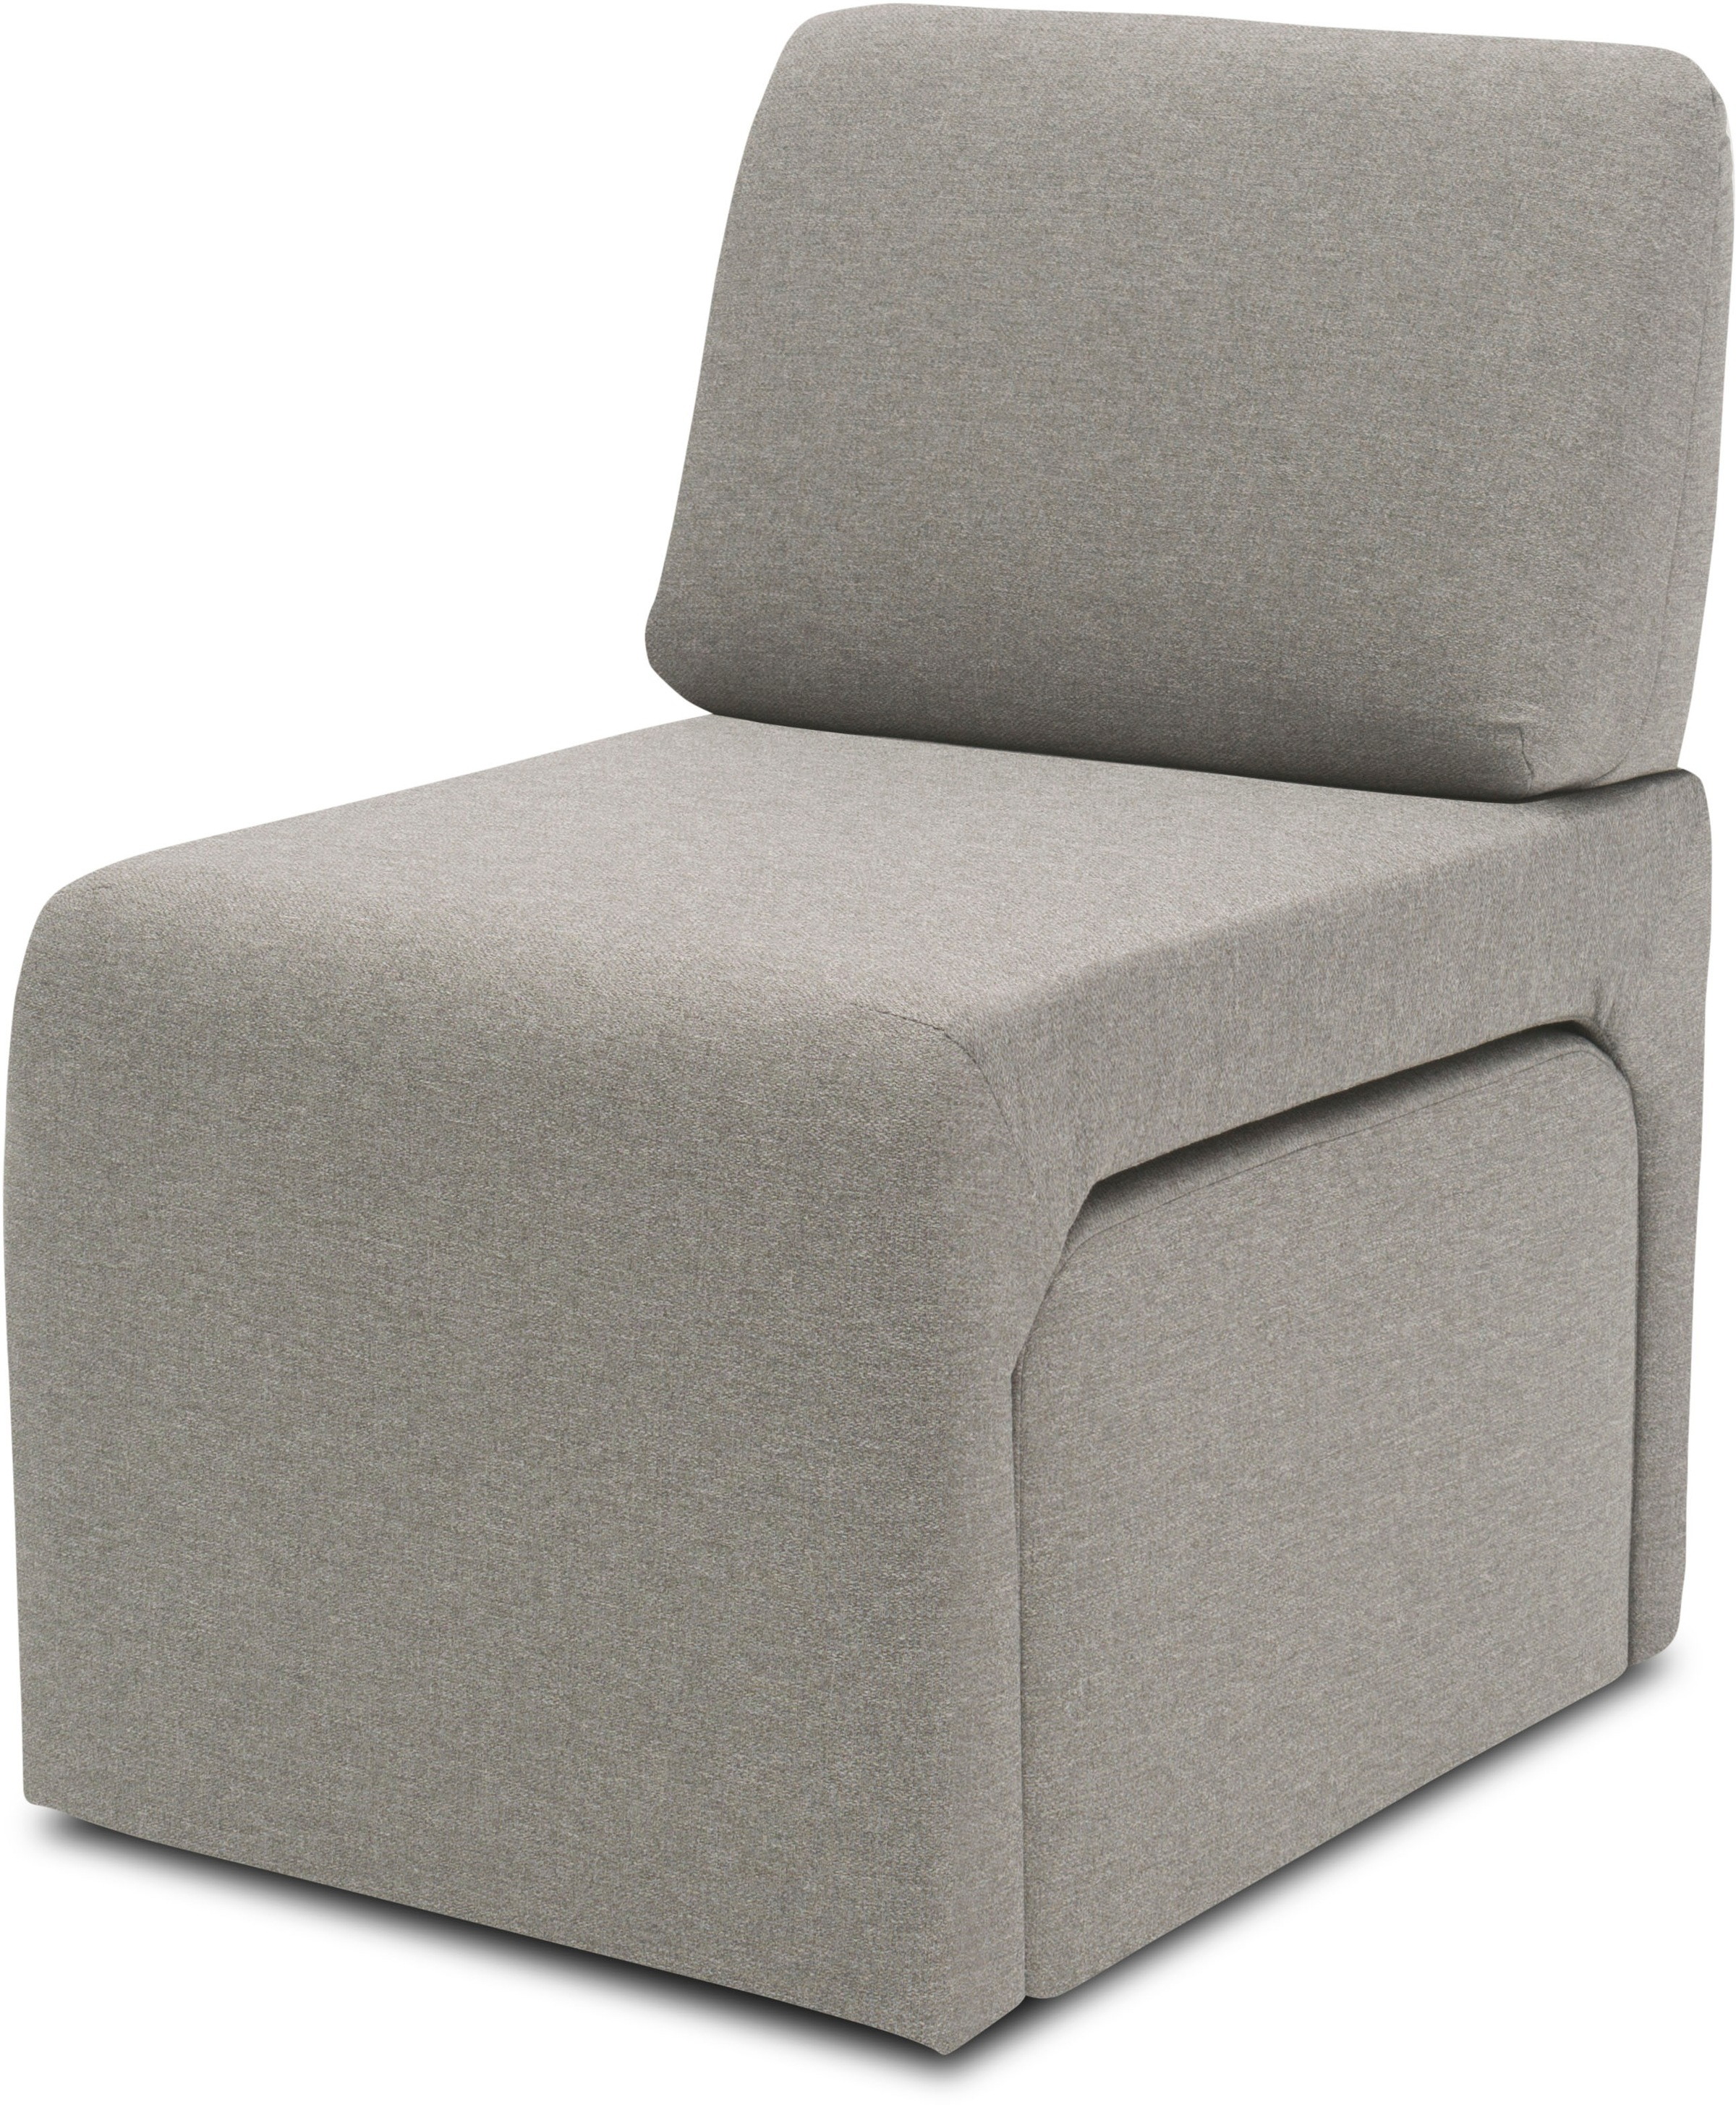 DOMO collection Sessel »700017 ideal für kleine Räume, platzsparend, trotzdem bequem«, Hocker unter dem Sessel verstaubar, lieferbar in nur 2 Wochen